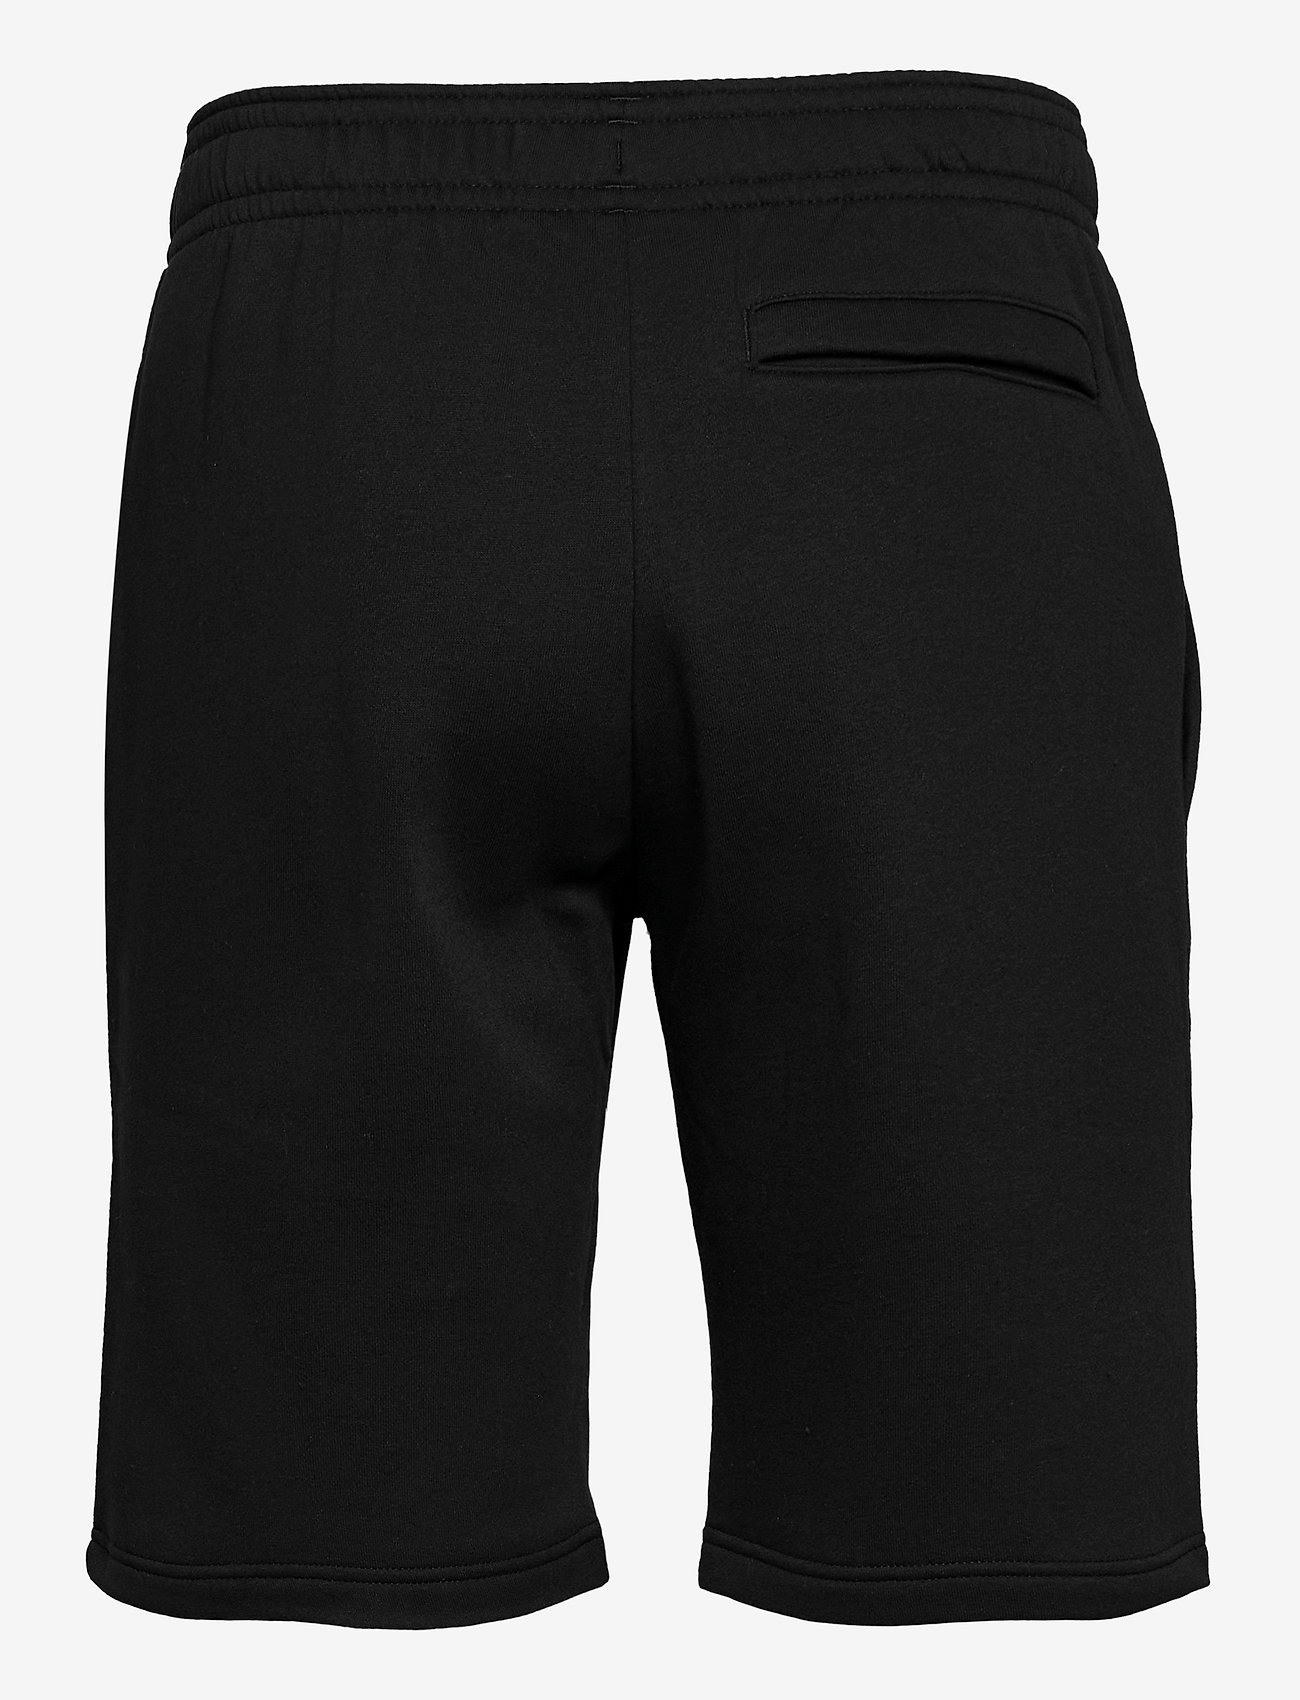 Ua Rival Fleece Shorts (Black) (26.25 